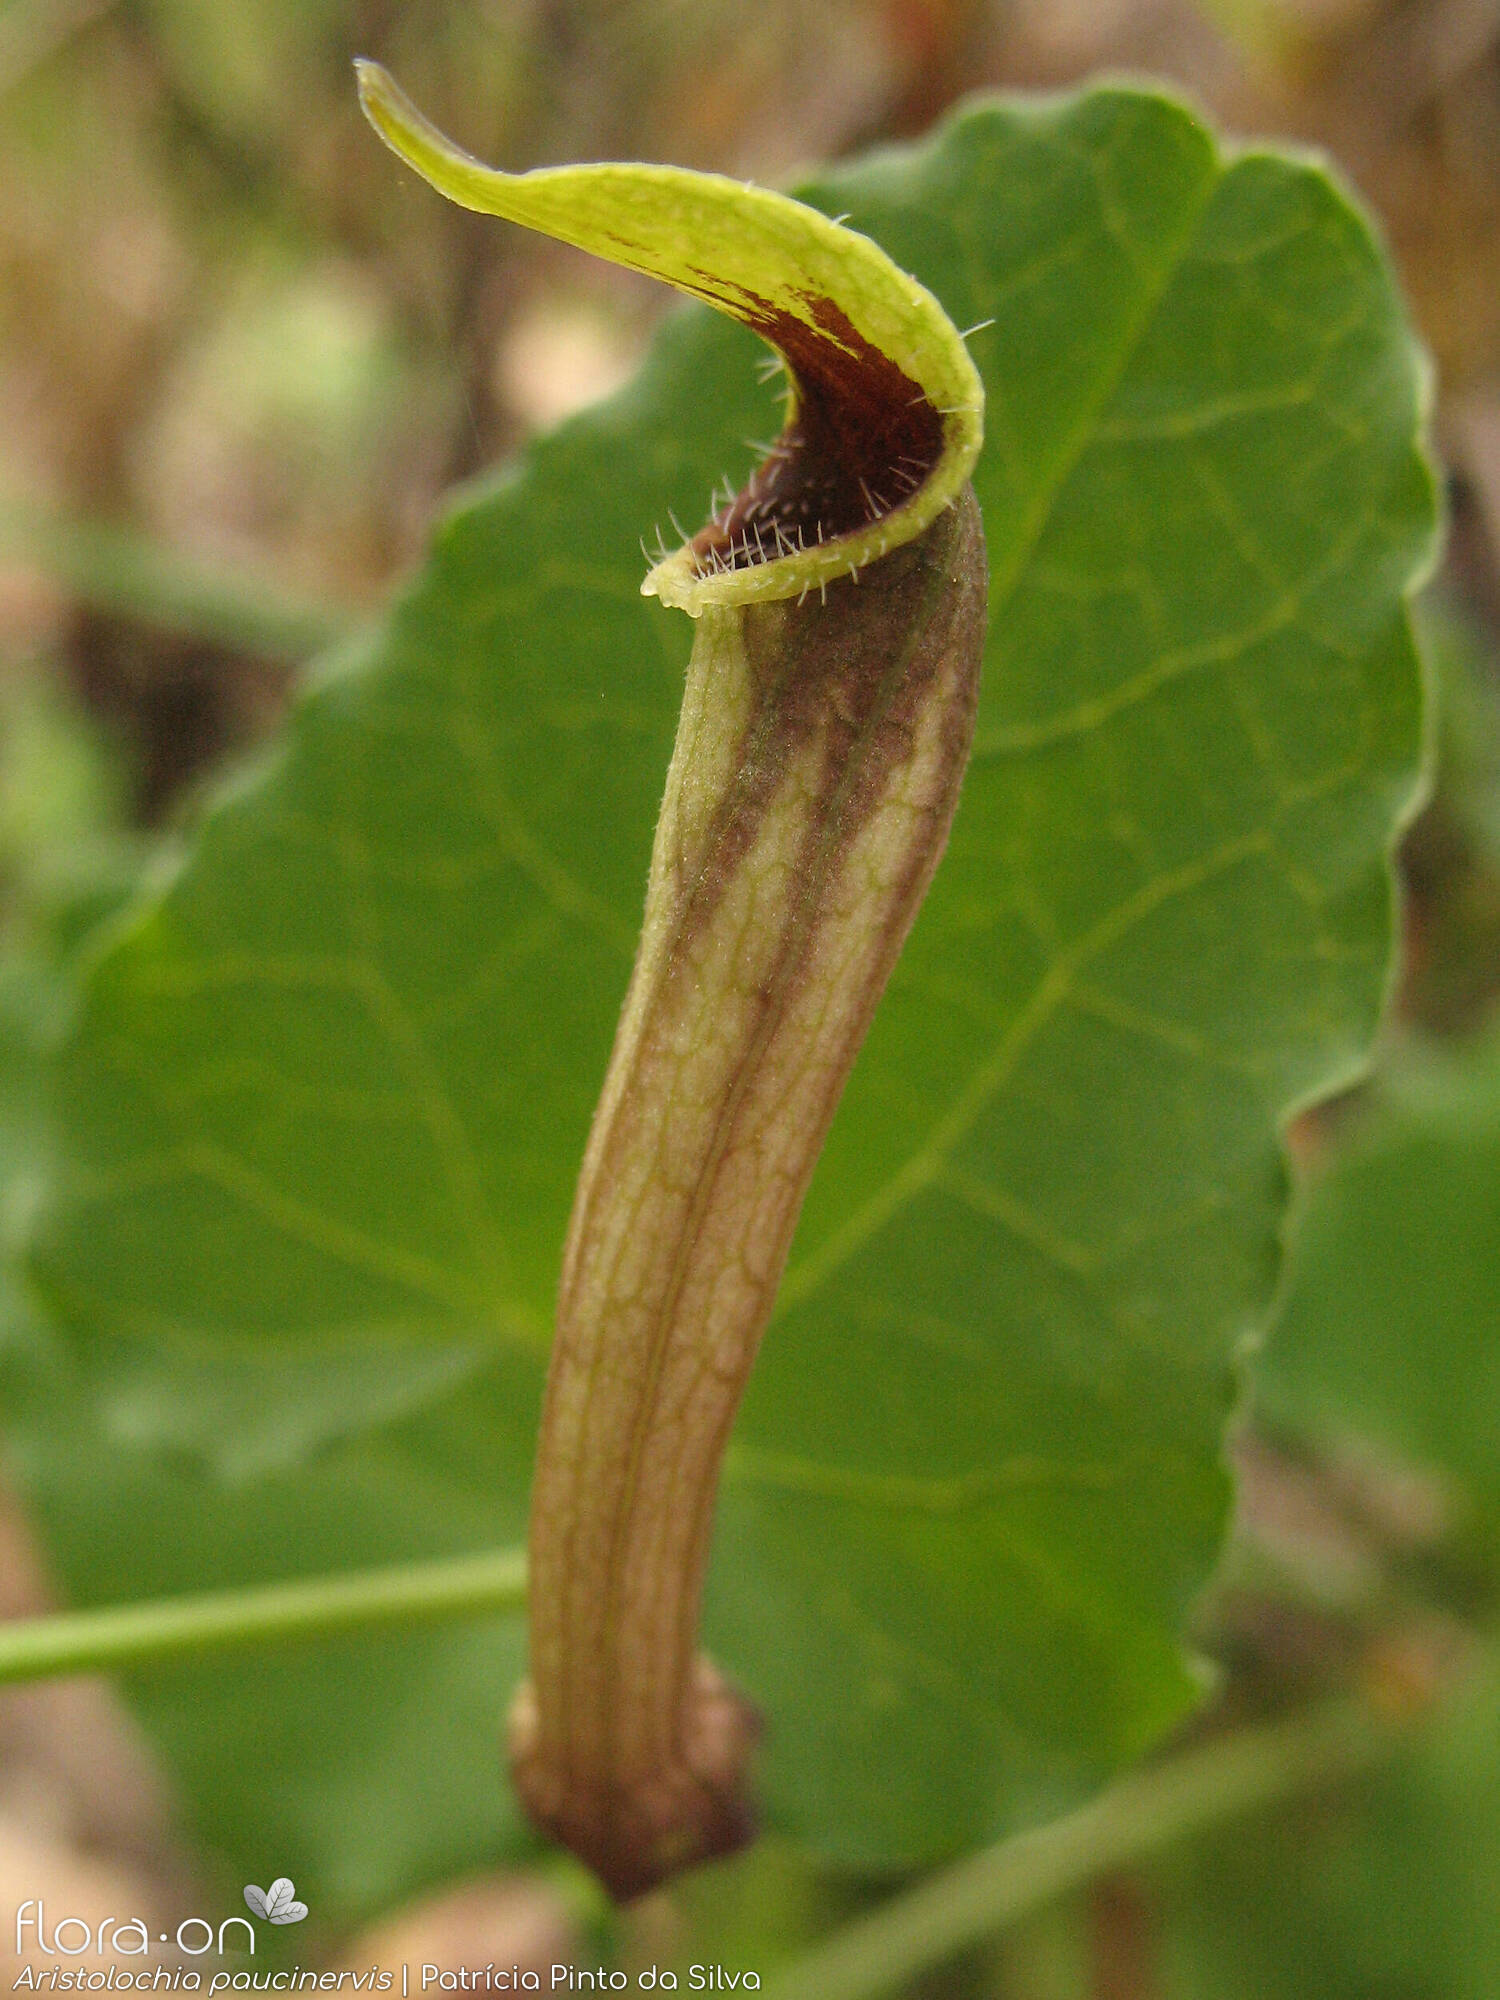 Aristolochia paucinervis - Flor (close-up) | Patrícia Pinto da Silva; CC BY-NC 4.0